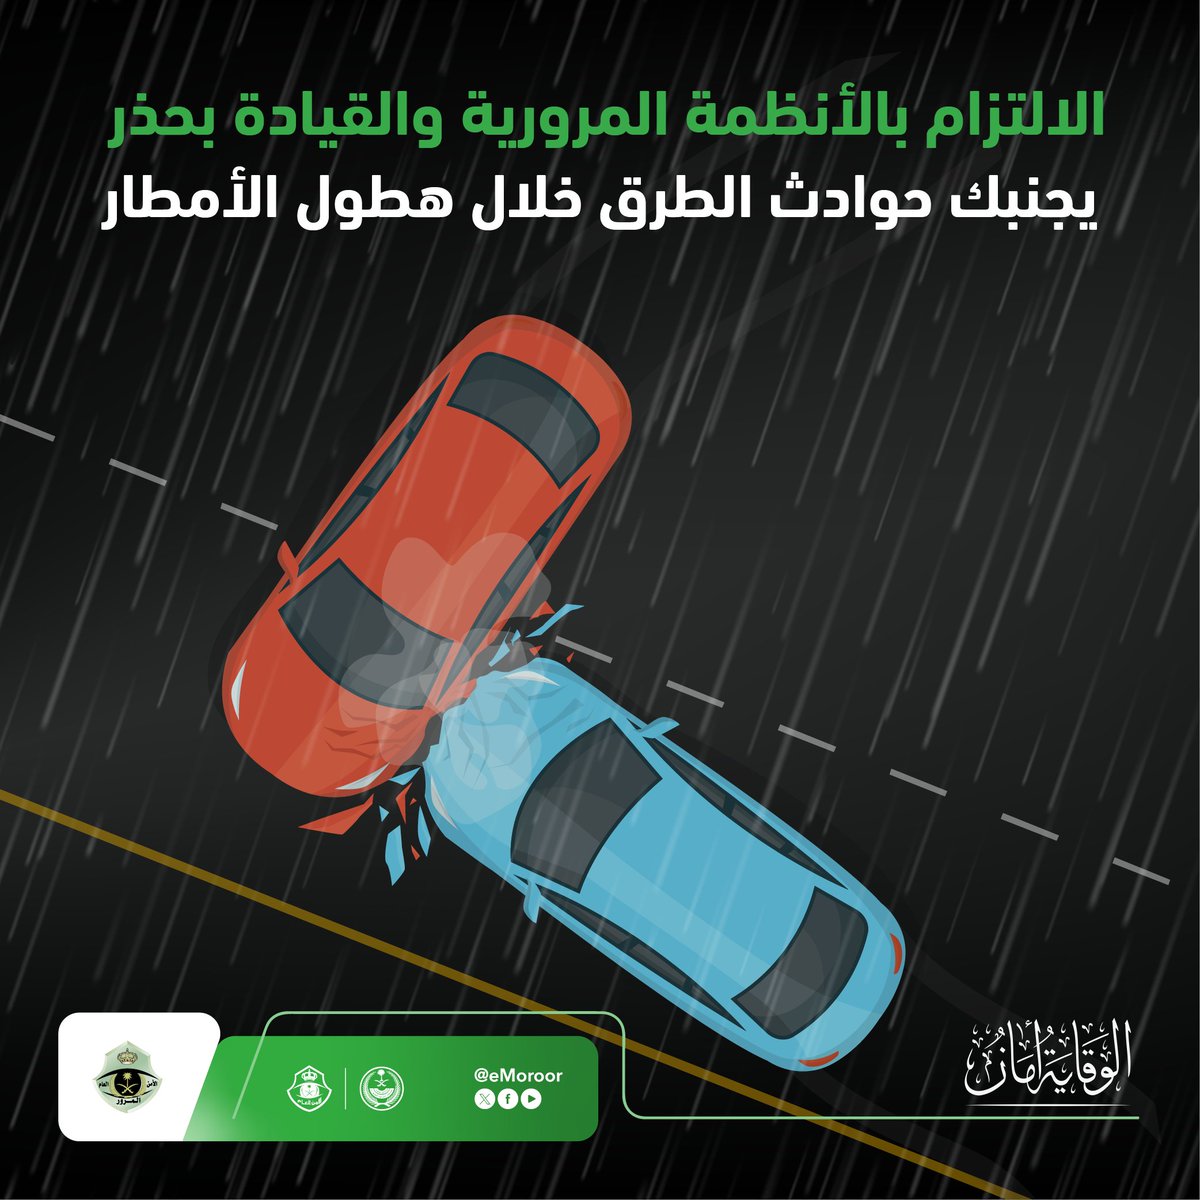 المطر يجعل الطرق زلقة وغير مستقرة .. القيادة بحذر خلال هطول الأمطار وقاية وأمان. #المرور_السعودي #الوقاية_أمان